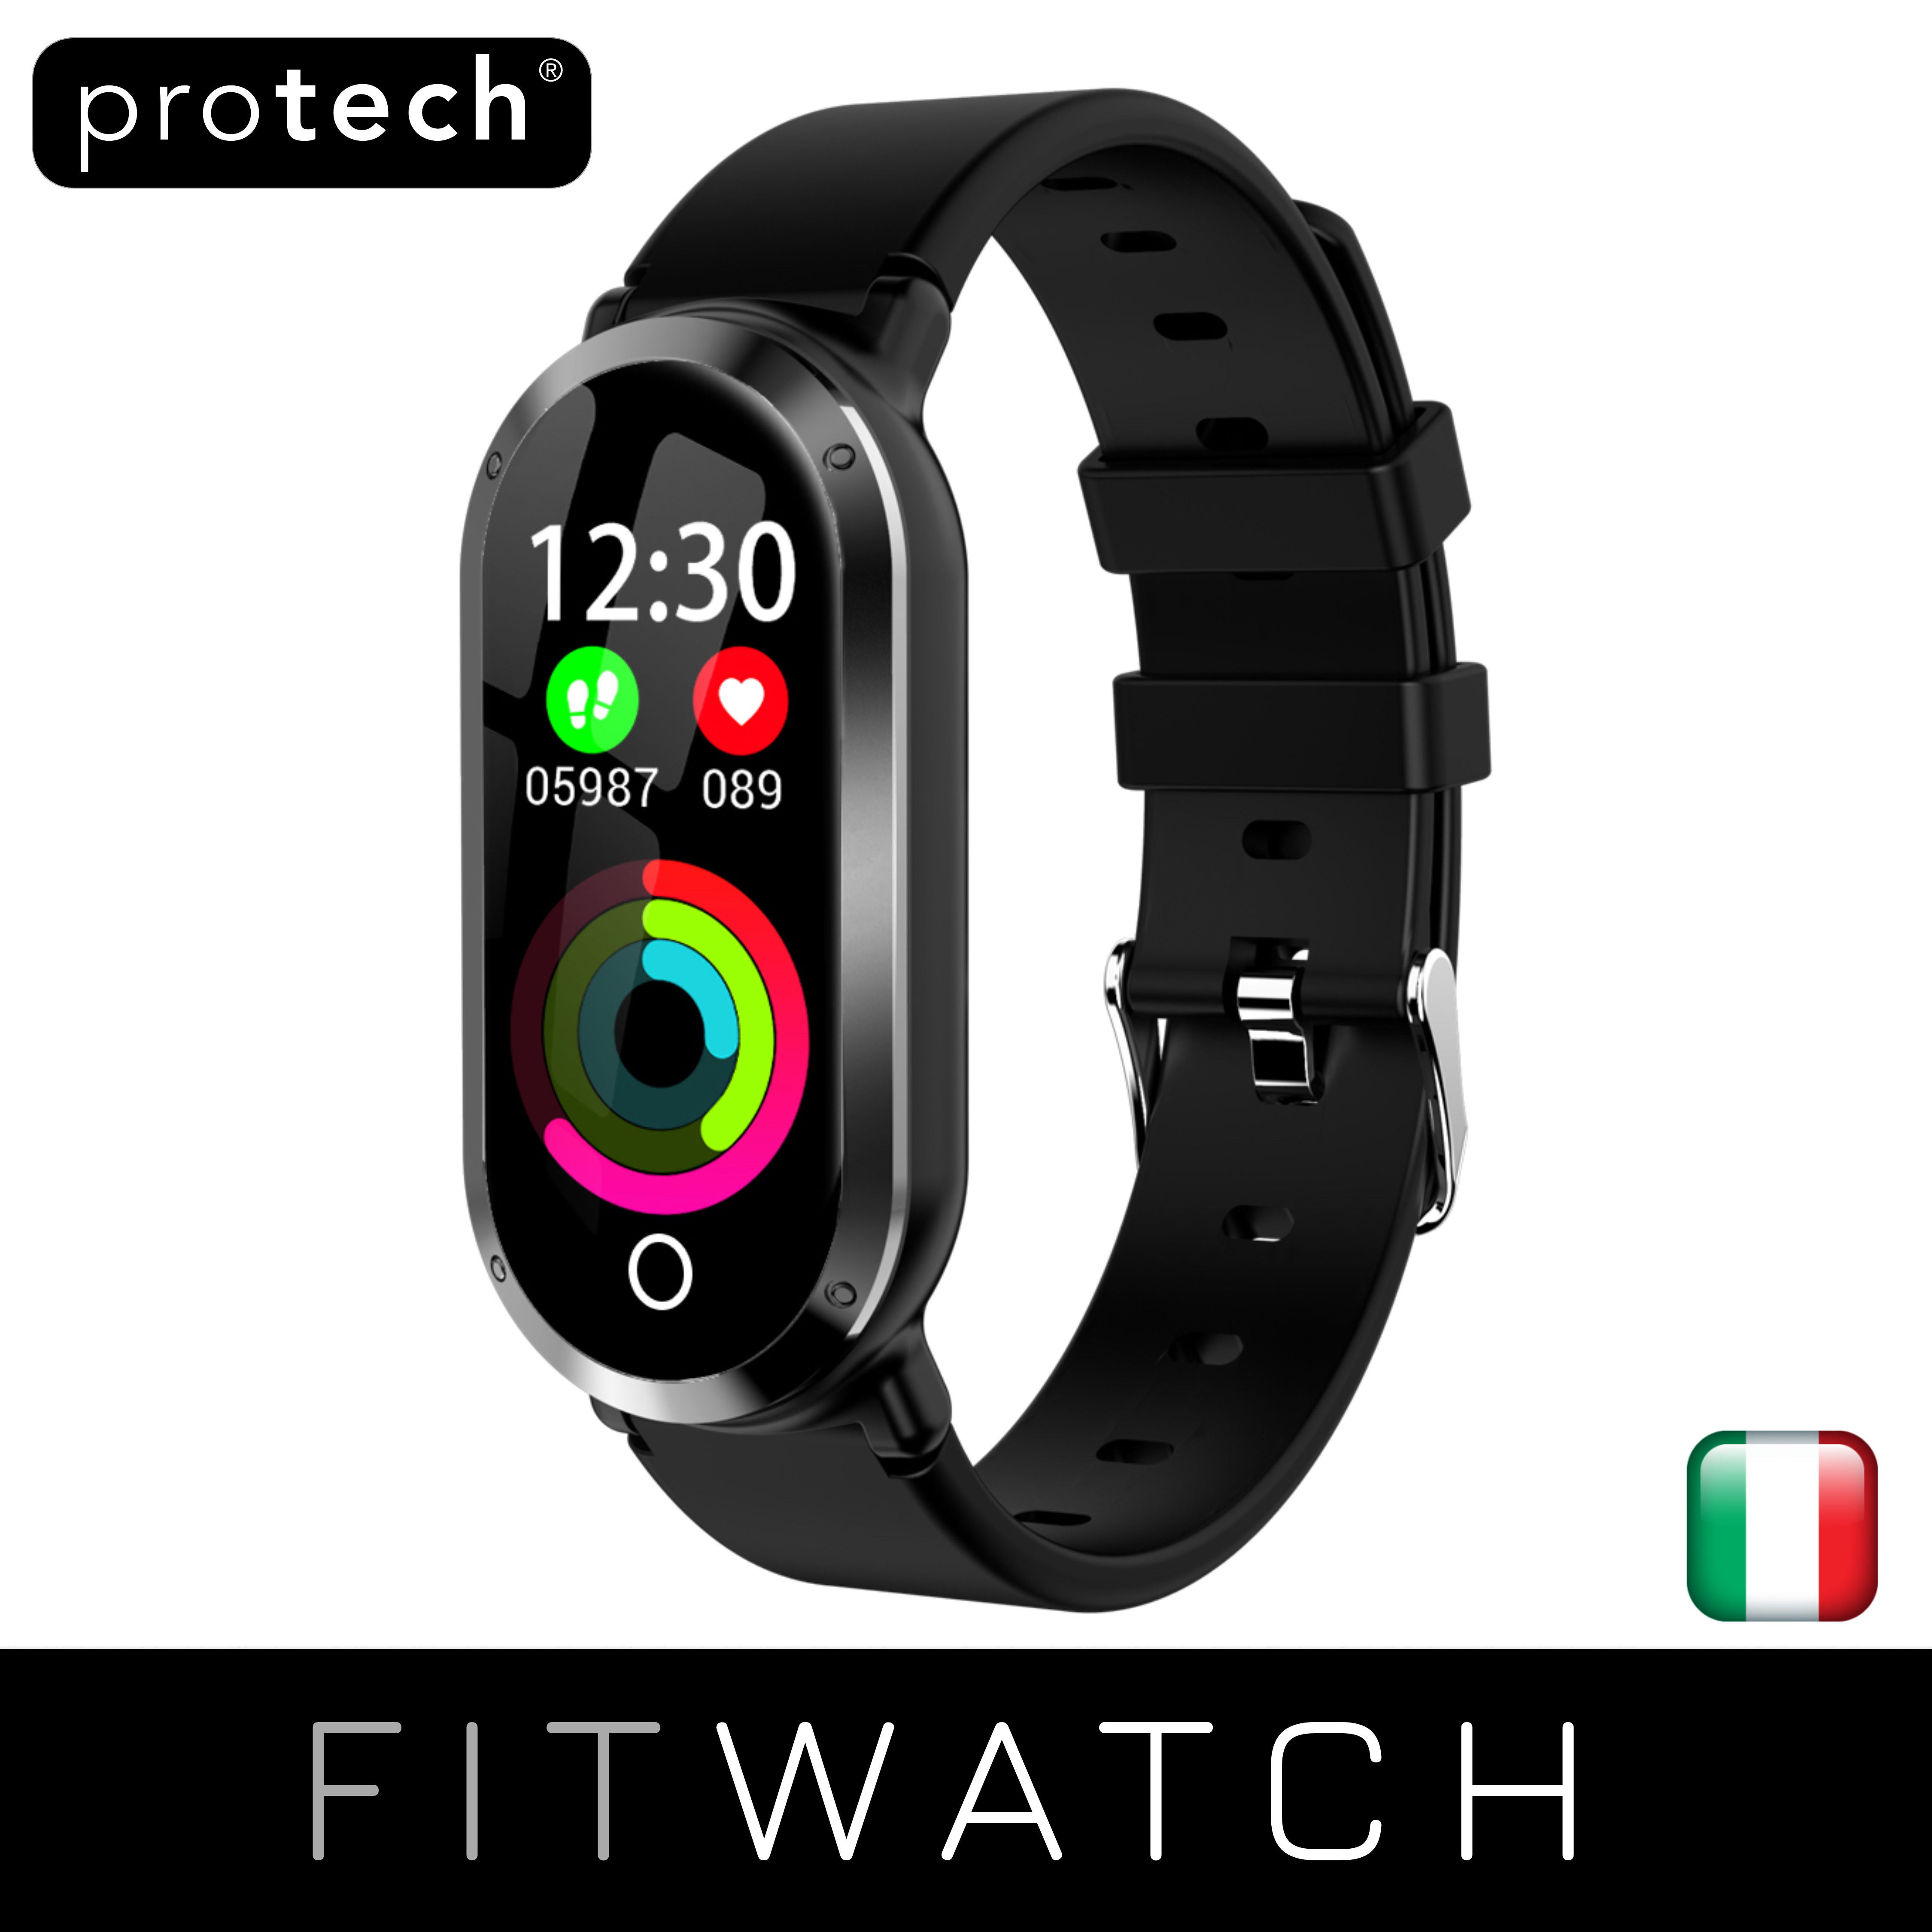 Bluetooth Smartwatch Impermeabile con Cardiofrequenzimetro Sleep Monitor Contapassi Tracker attività Richiama Promemoria per Uomini/Donne per Android iOS Orologio intelligente Fitness Tracker 